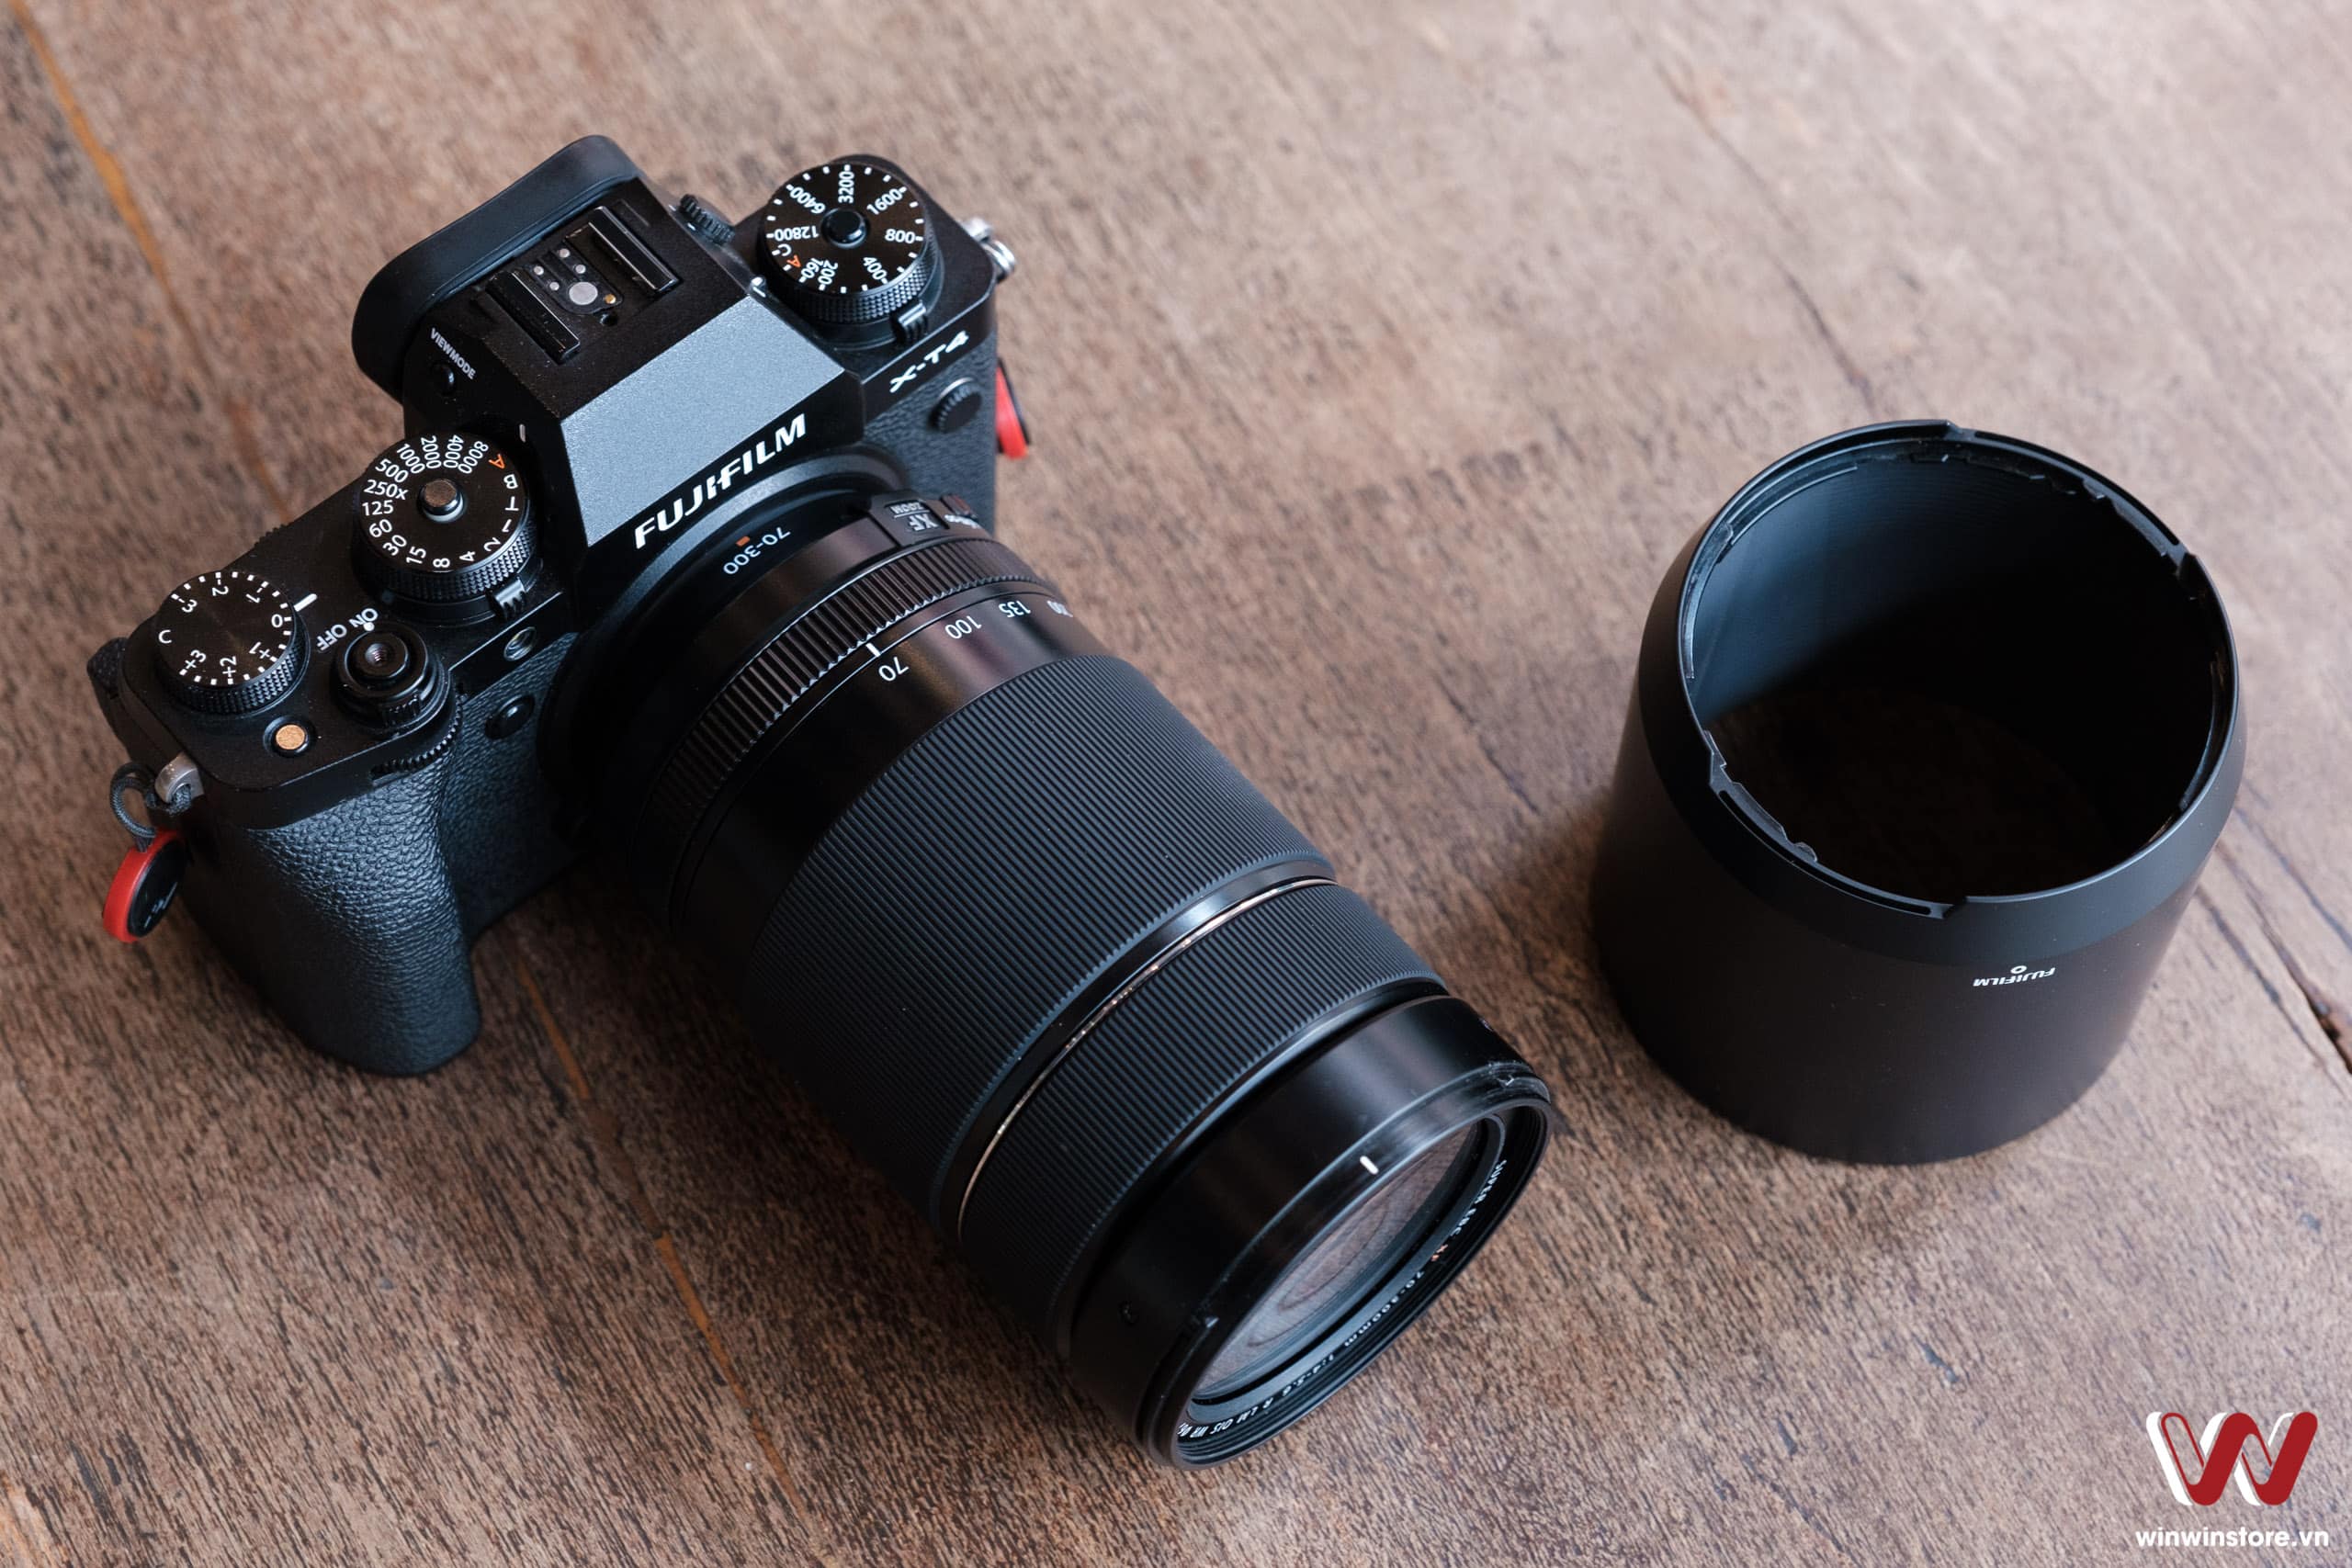 Những chiếc ống kính tốt nhất dành cho máy ảnh Fujifilm trong năm 2021 này